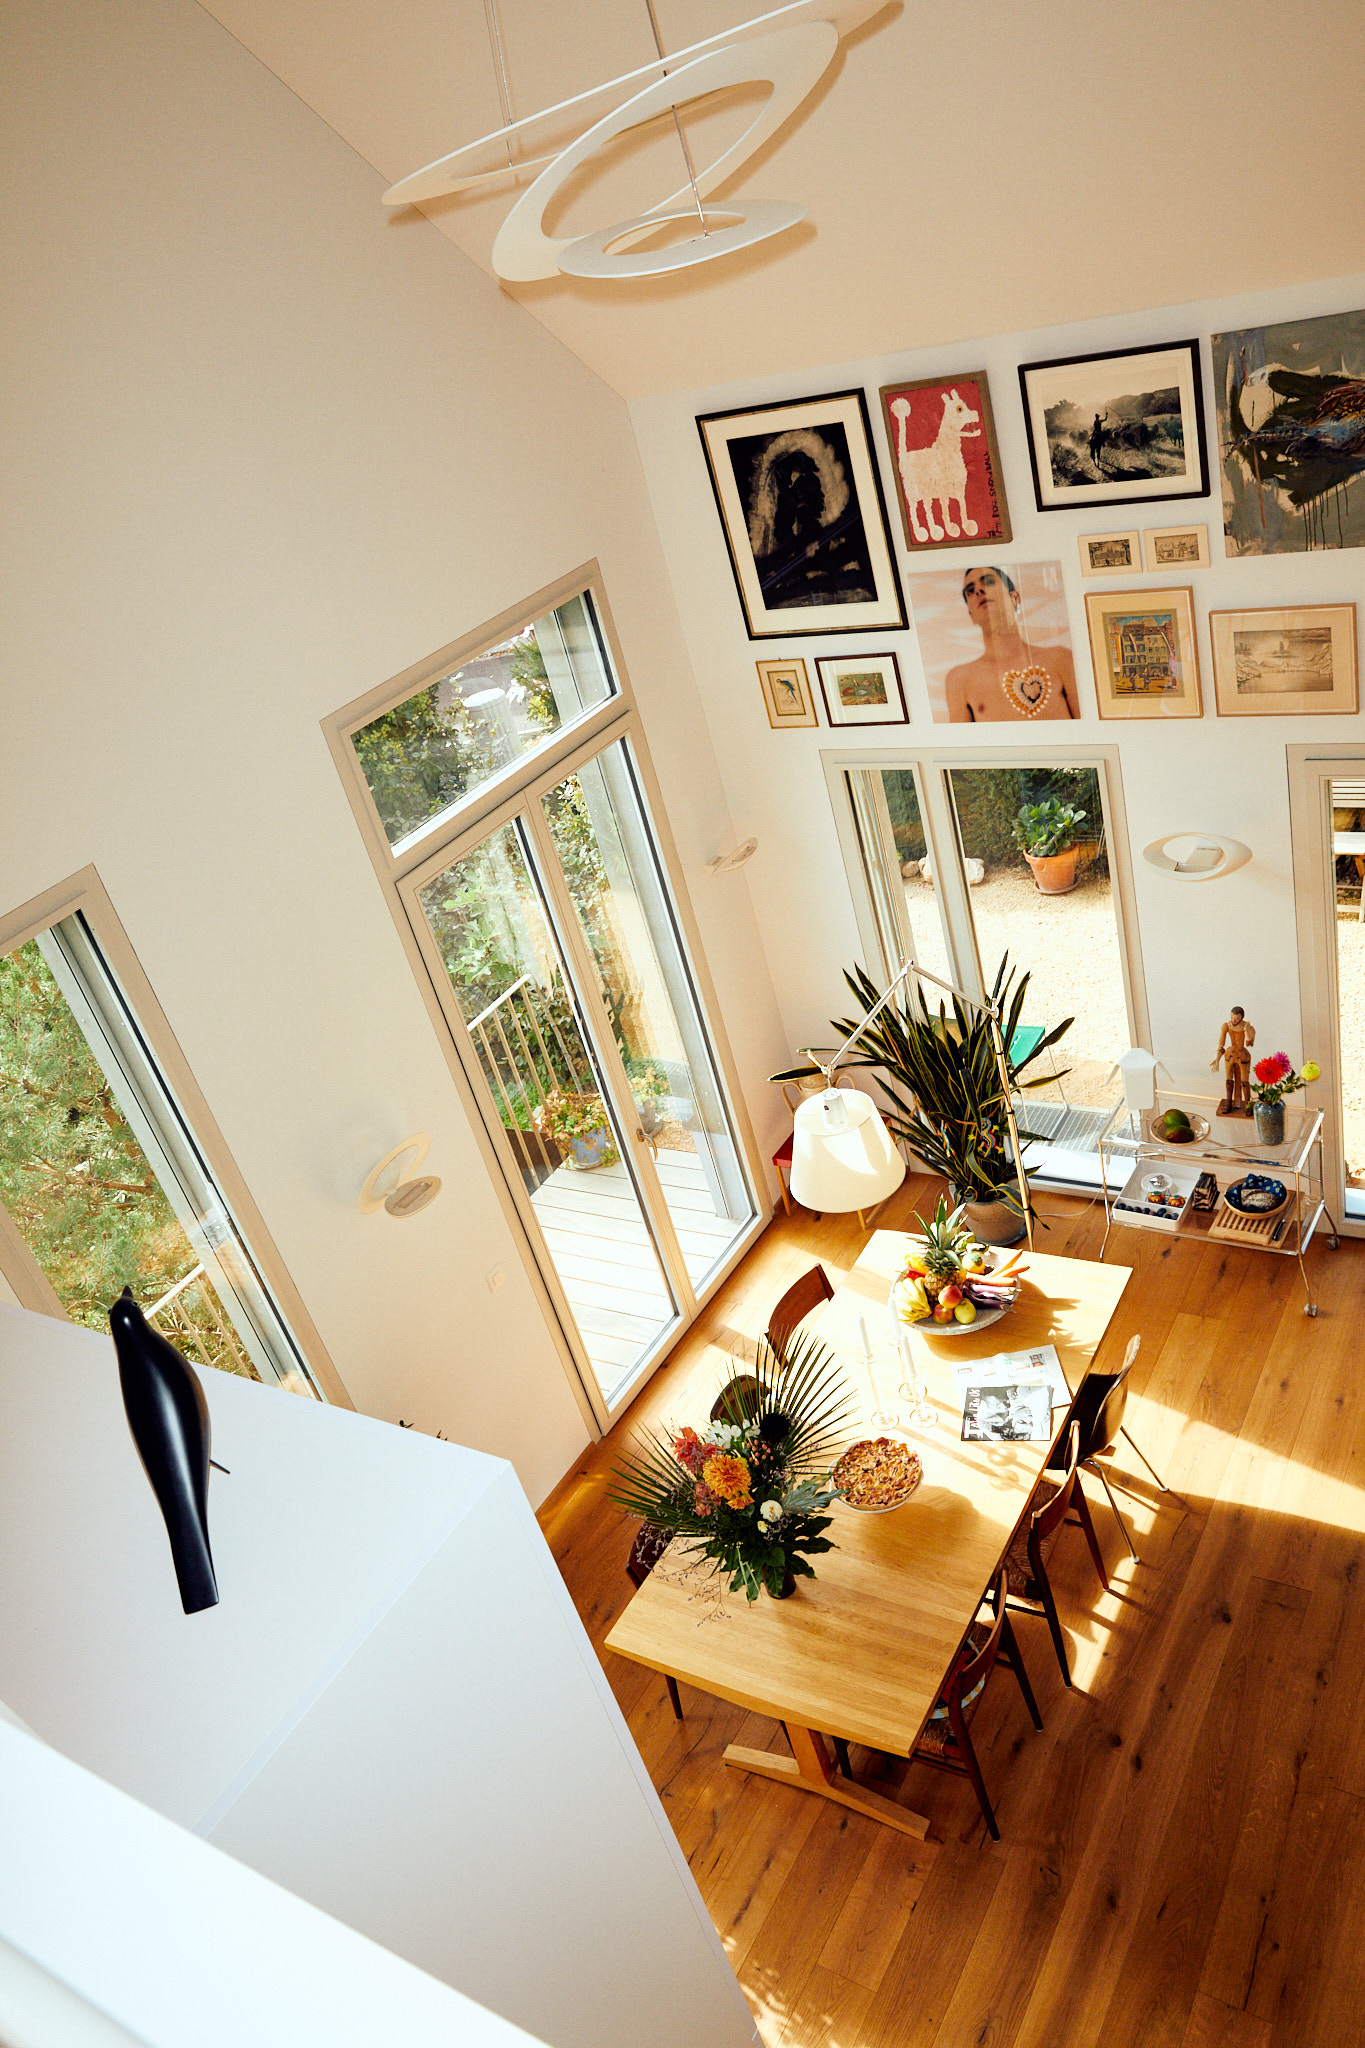 Esszimmer mit großem Tisch, Stühlen, Bilder an der Wand, alles aus einer Perspektive von Oben fotografiert